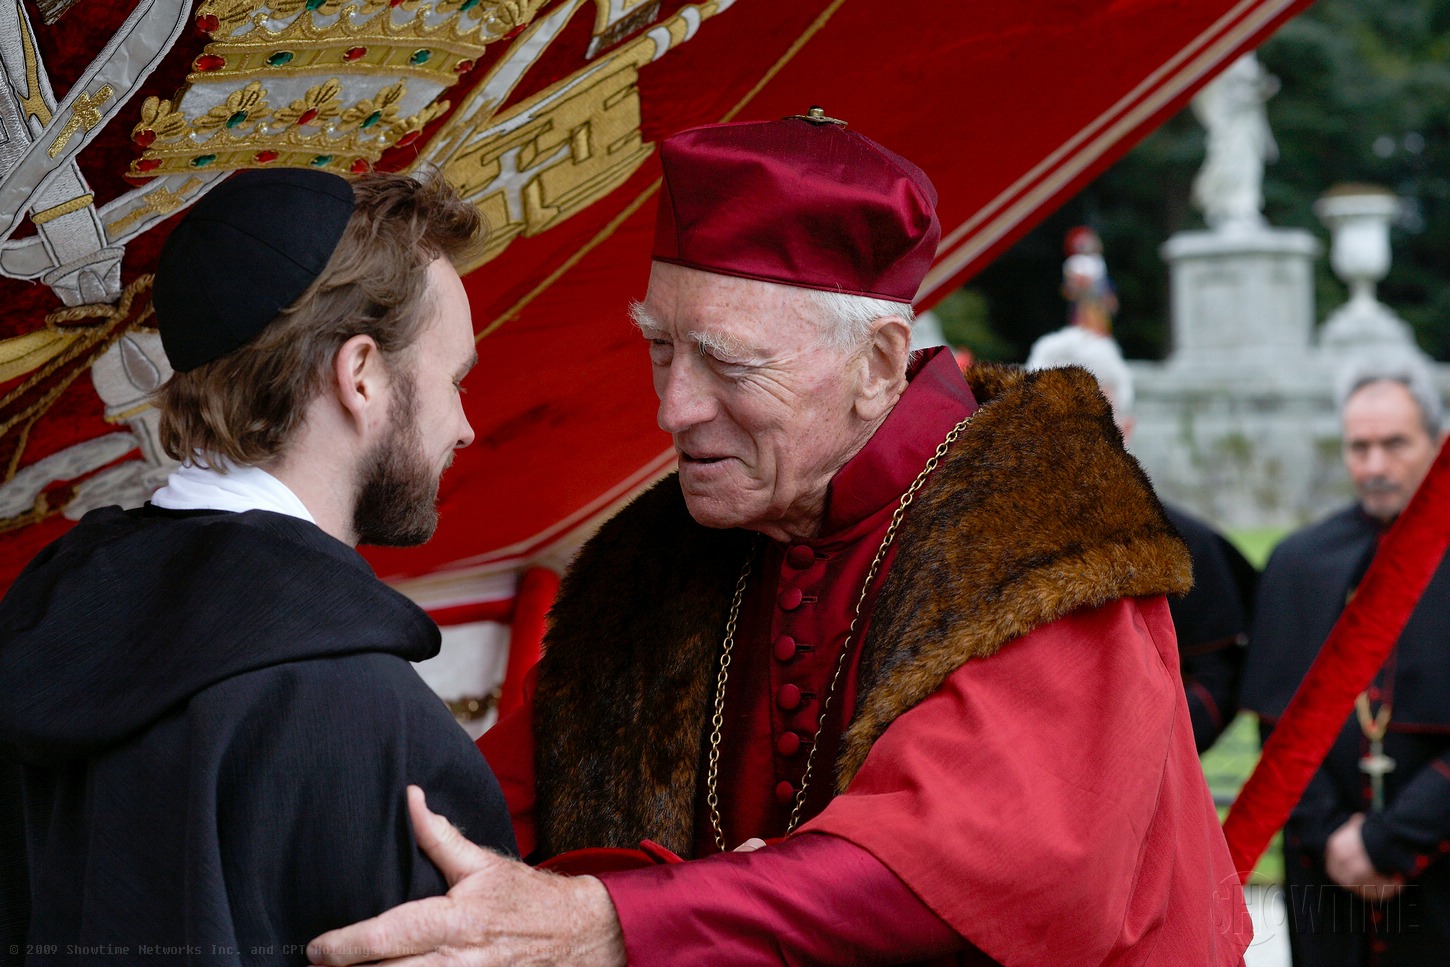 Cardinal von Waldburg and Reginald Pole